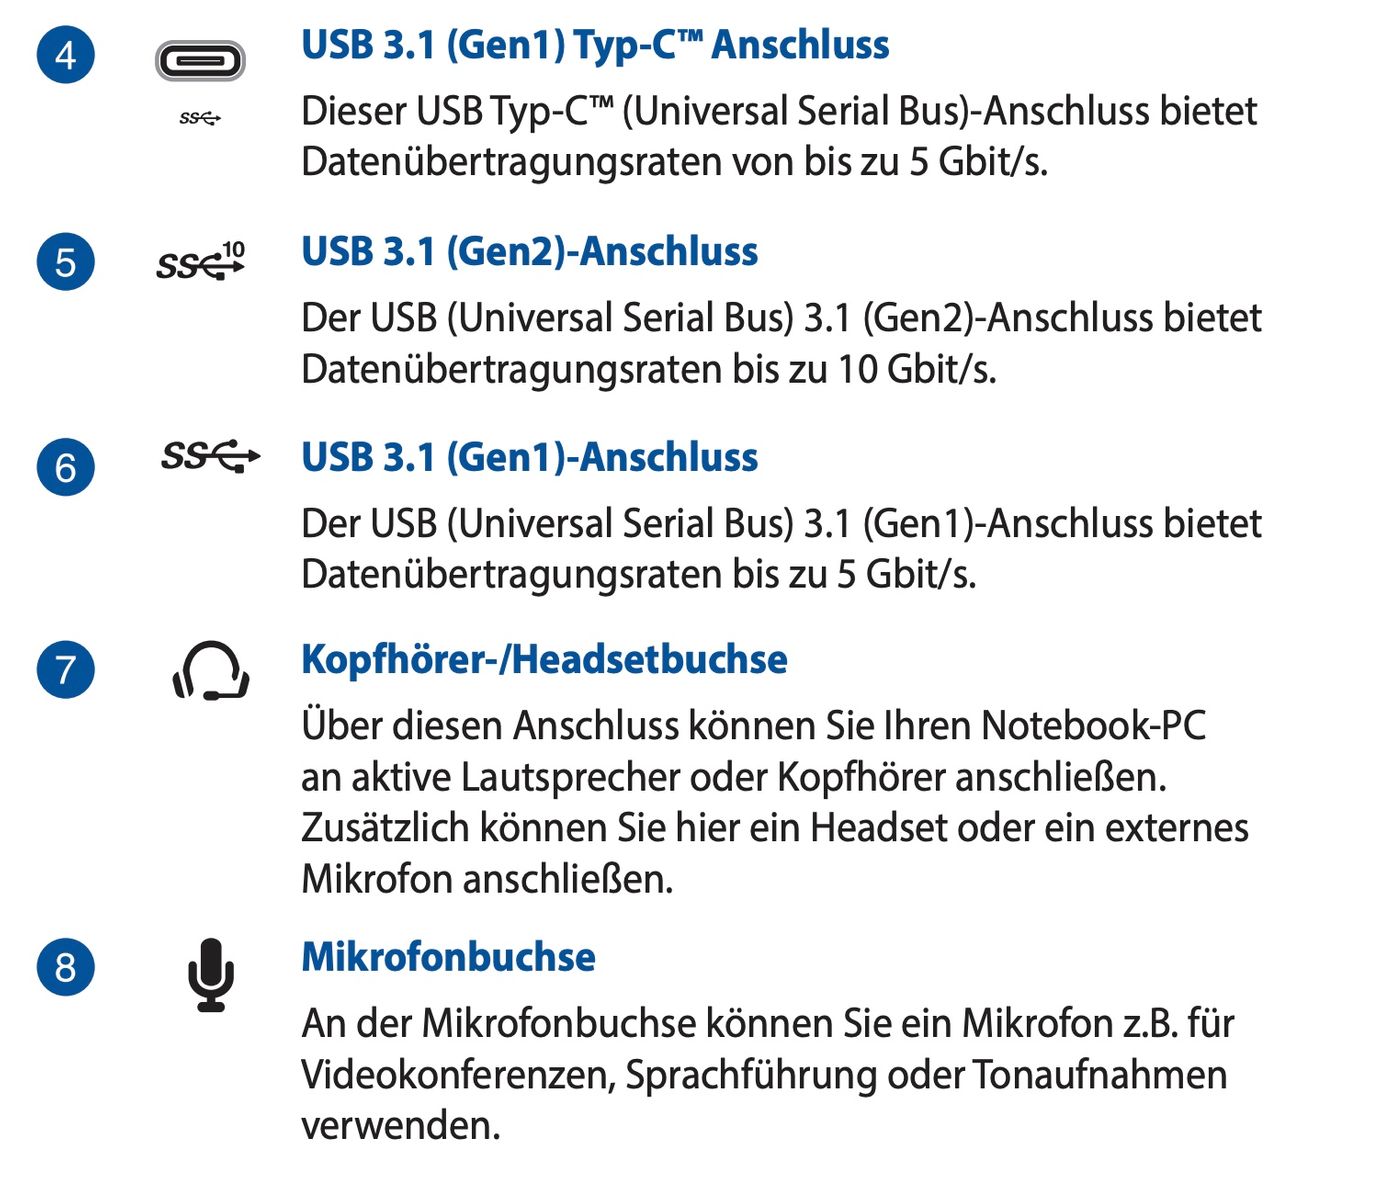 ASUS Mini PC PB60, USB 3.1, USB-Type C, SATA, m2 SSD, DDR4 S0-DIMM